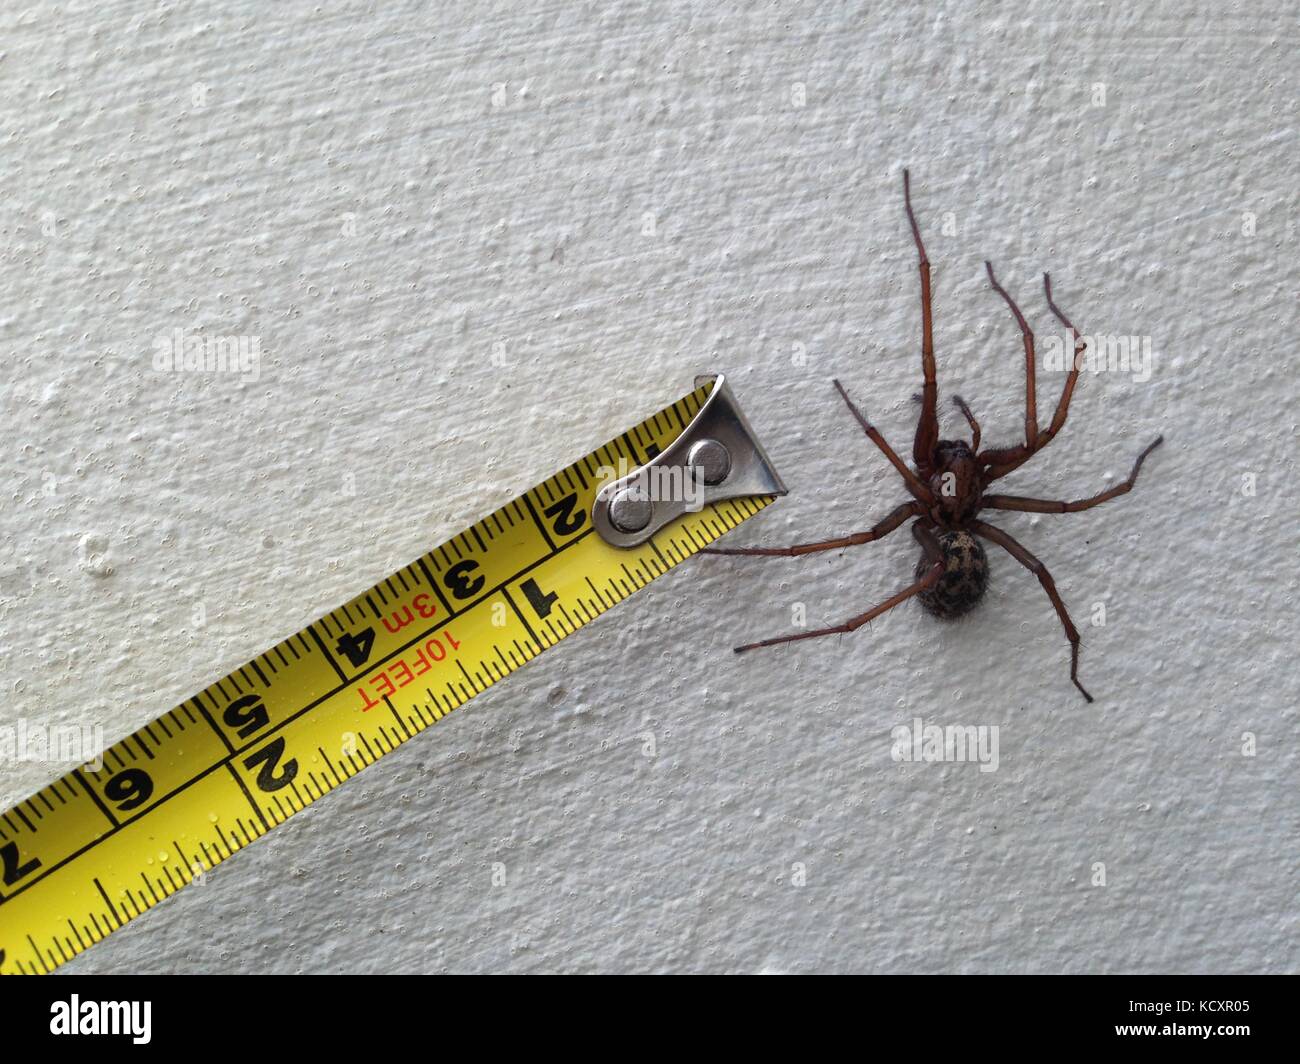 große schwarze Spinne Stockfotografie - Alamy